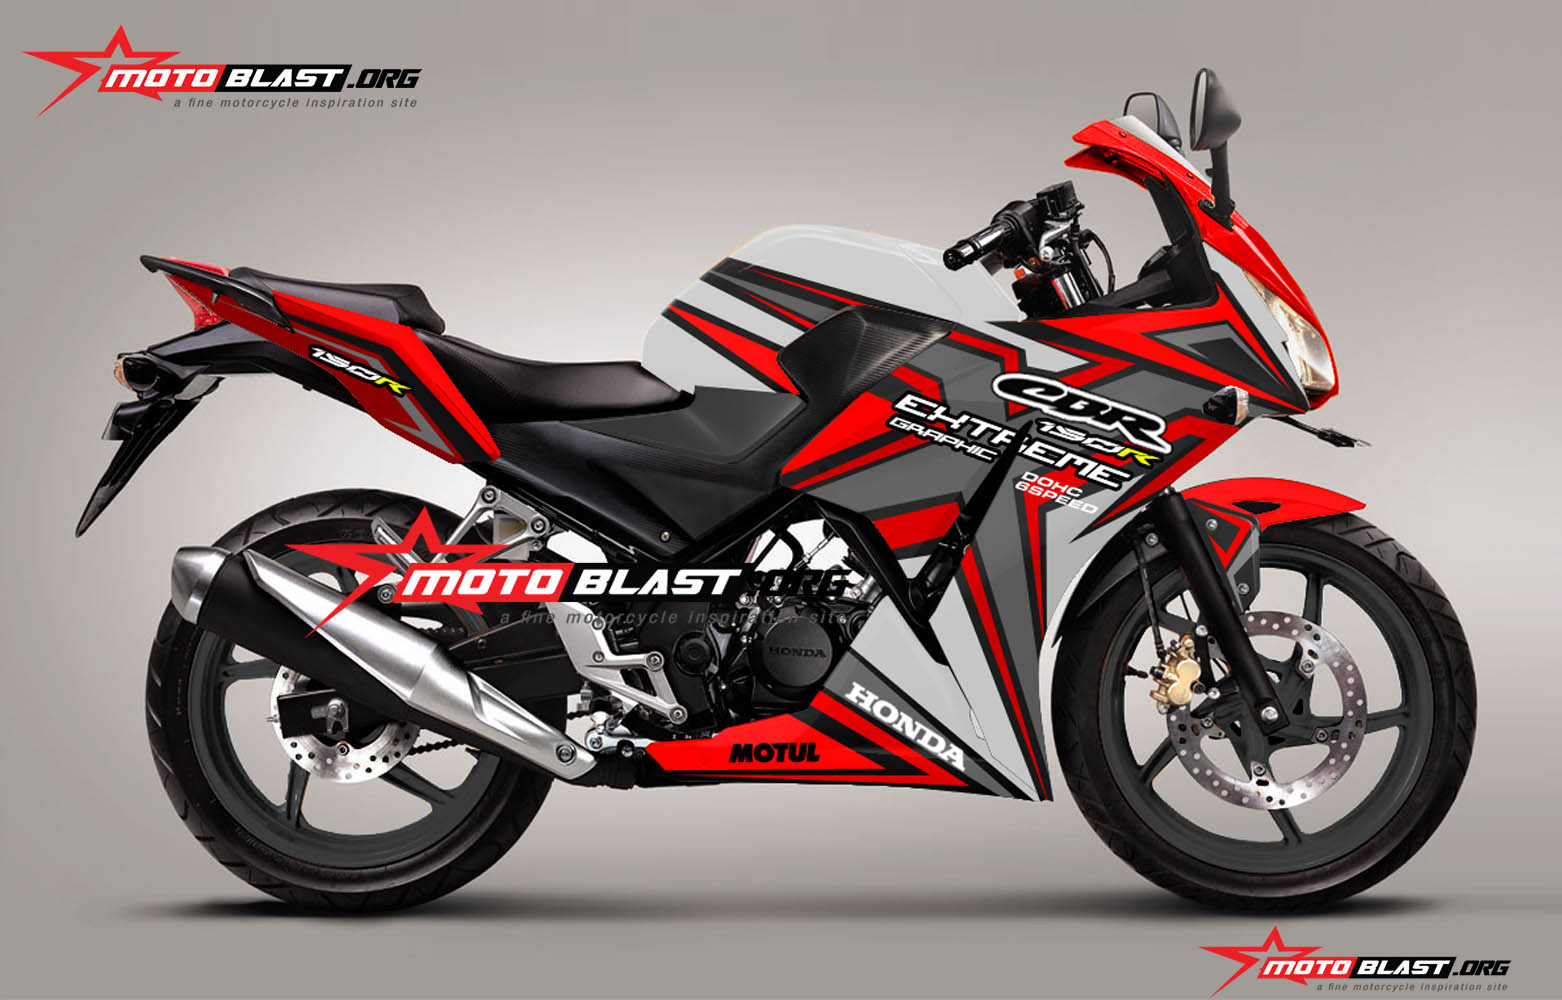 Motoblast Modifikasi Grafis Inspirasi Honda New CBR150r